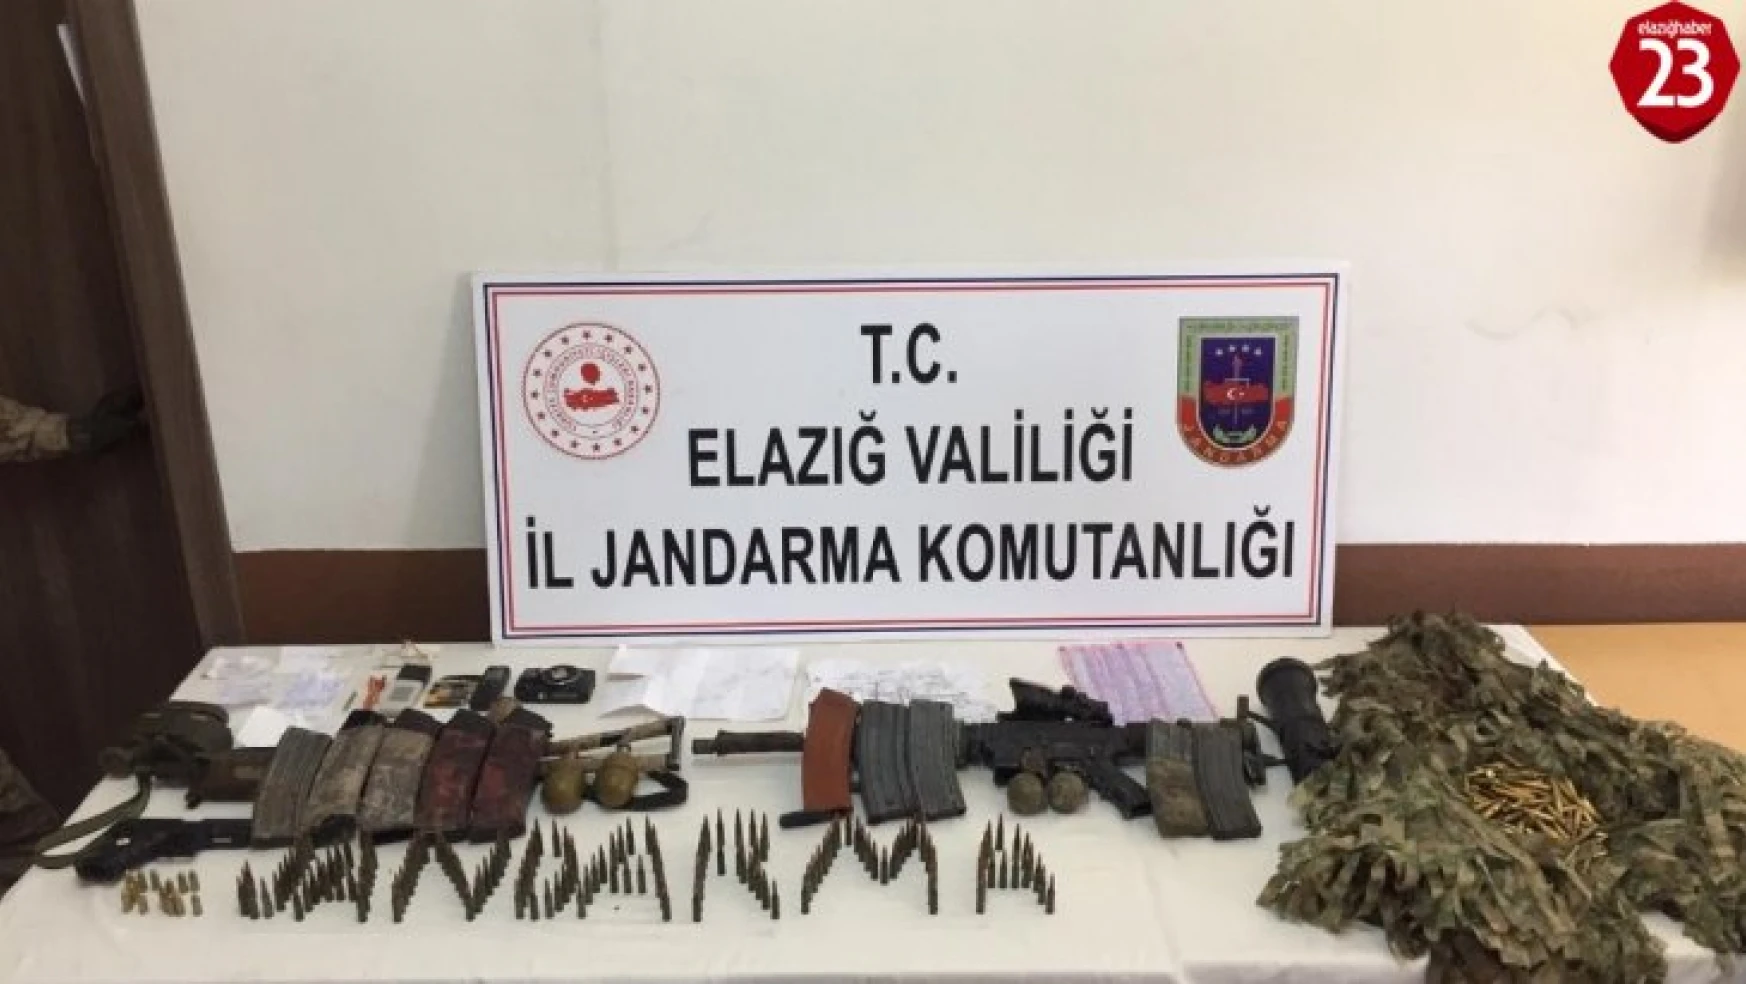 Elazığ'da etkisiz hale getirilen 16'sı sivil 21 şehidin faili ikinci terörist de turuncu kategoride çıktı